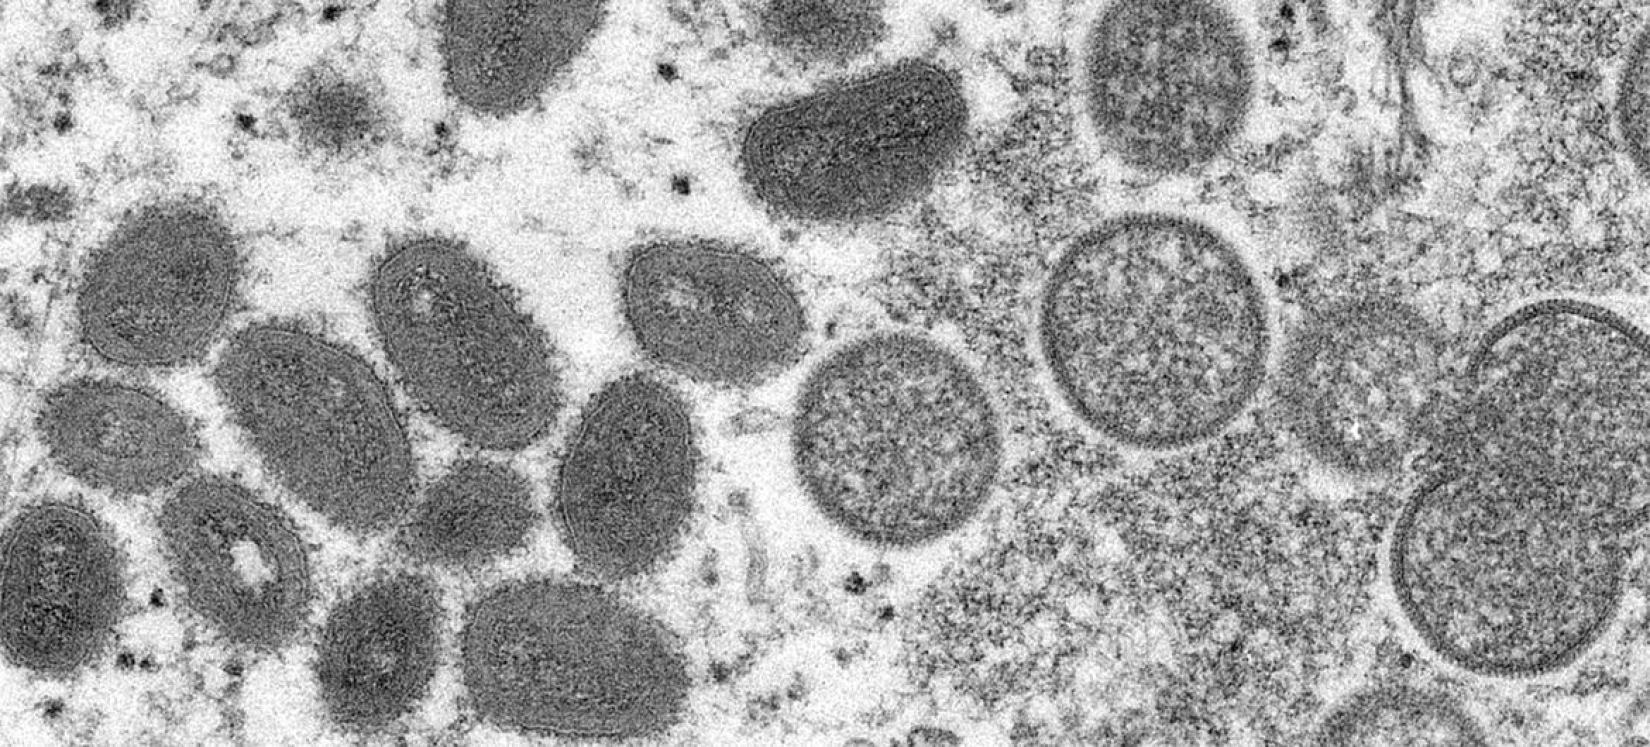 Desde 13 de maio de 2022, casos de varíola dos macacos foram relatados à OMS.